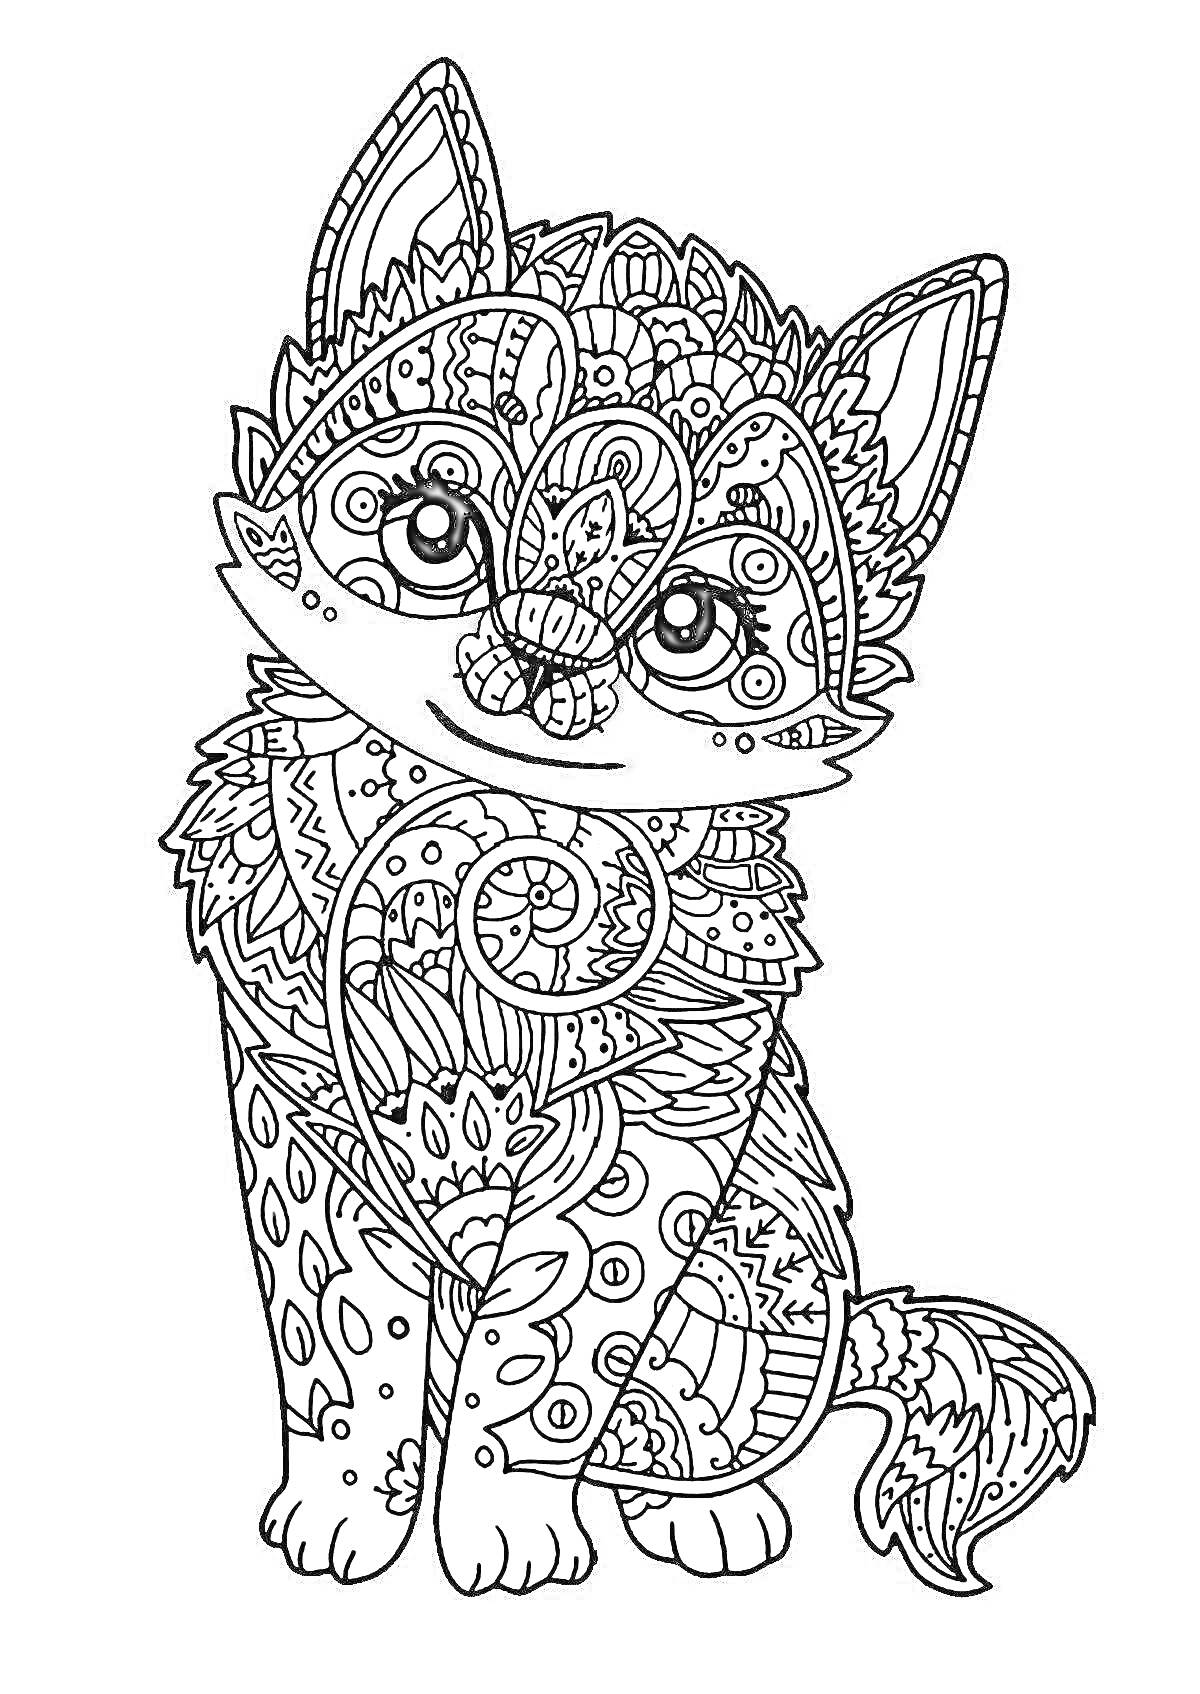 Раскраска Раскраска с изображением котенка, наполненного сложными узорами и узорчатыми элементами